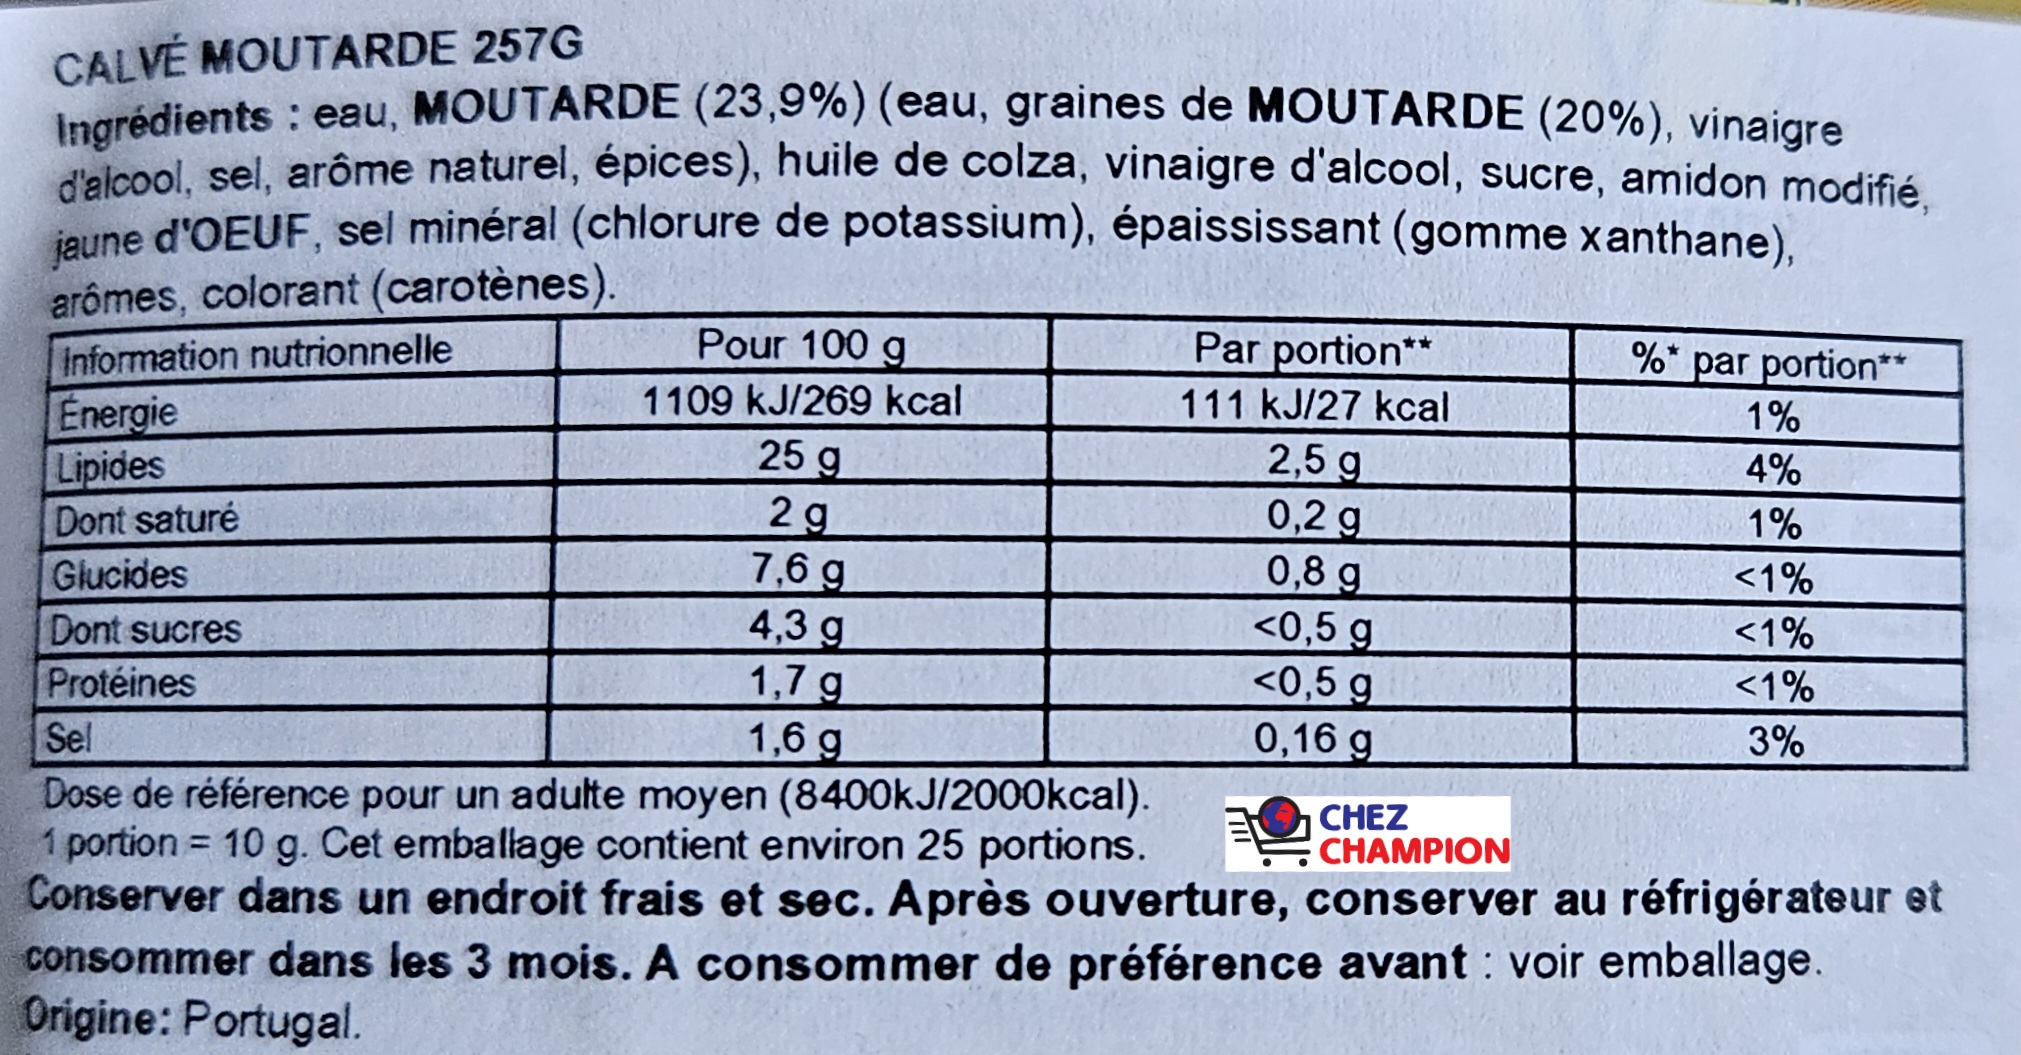 Calvé mostarda – moutarde – Senf – 257g